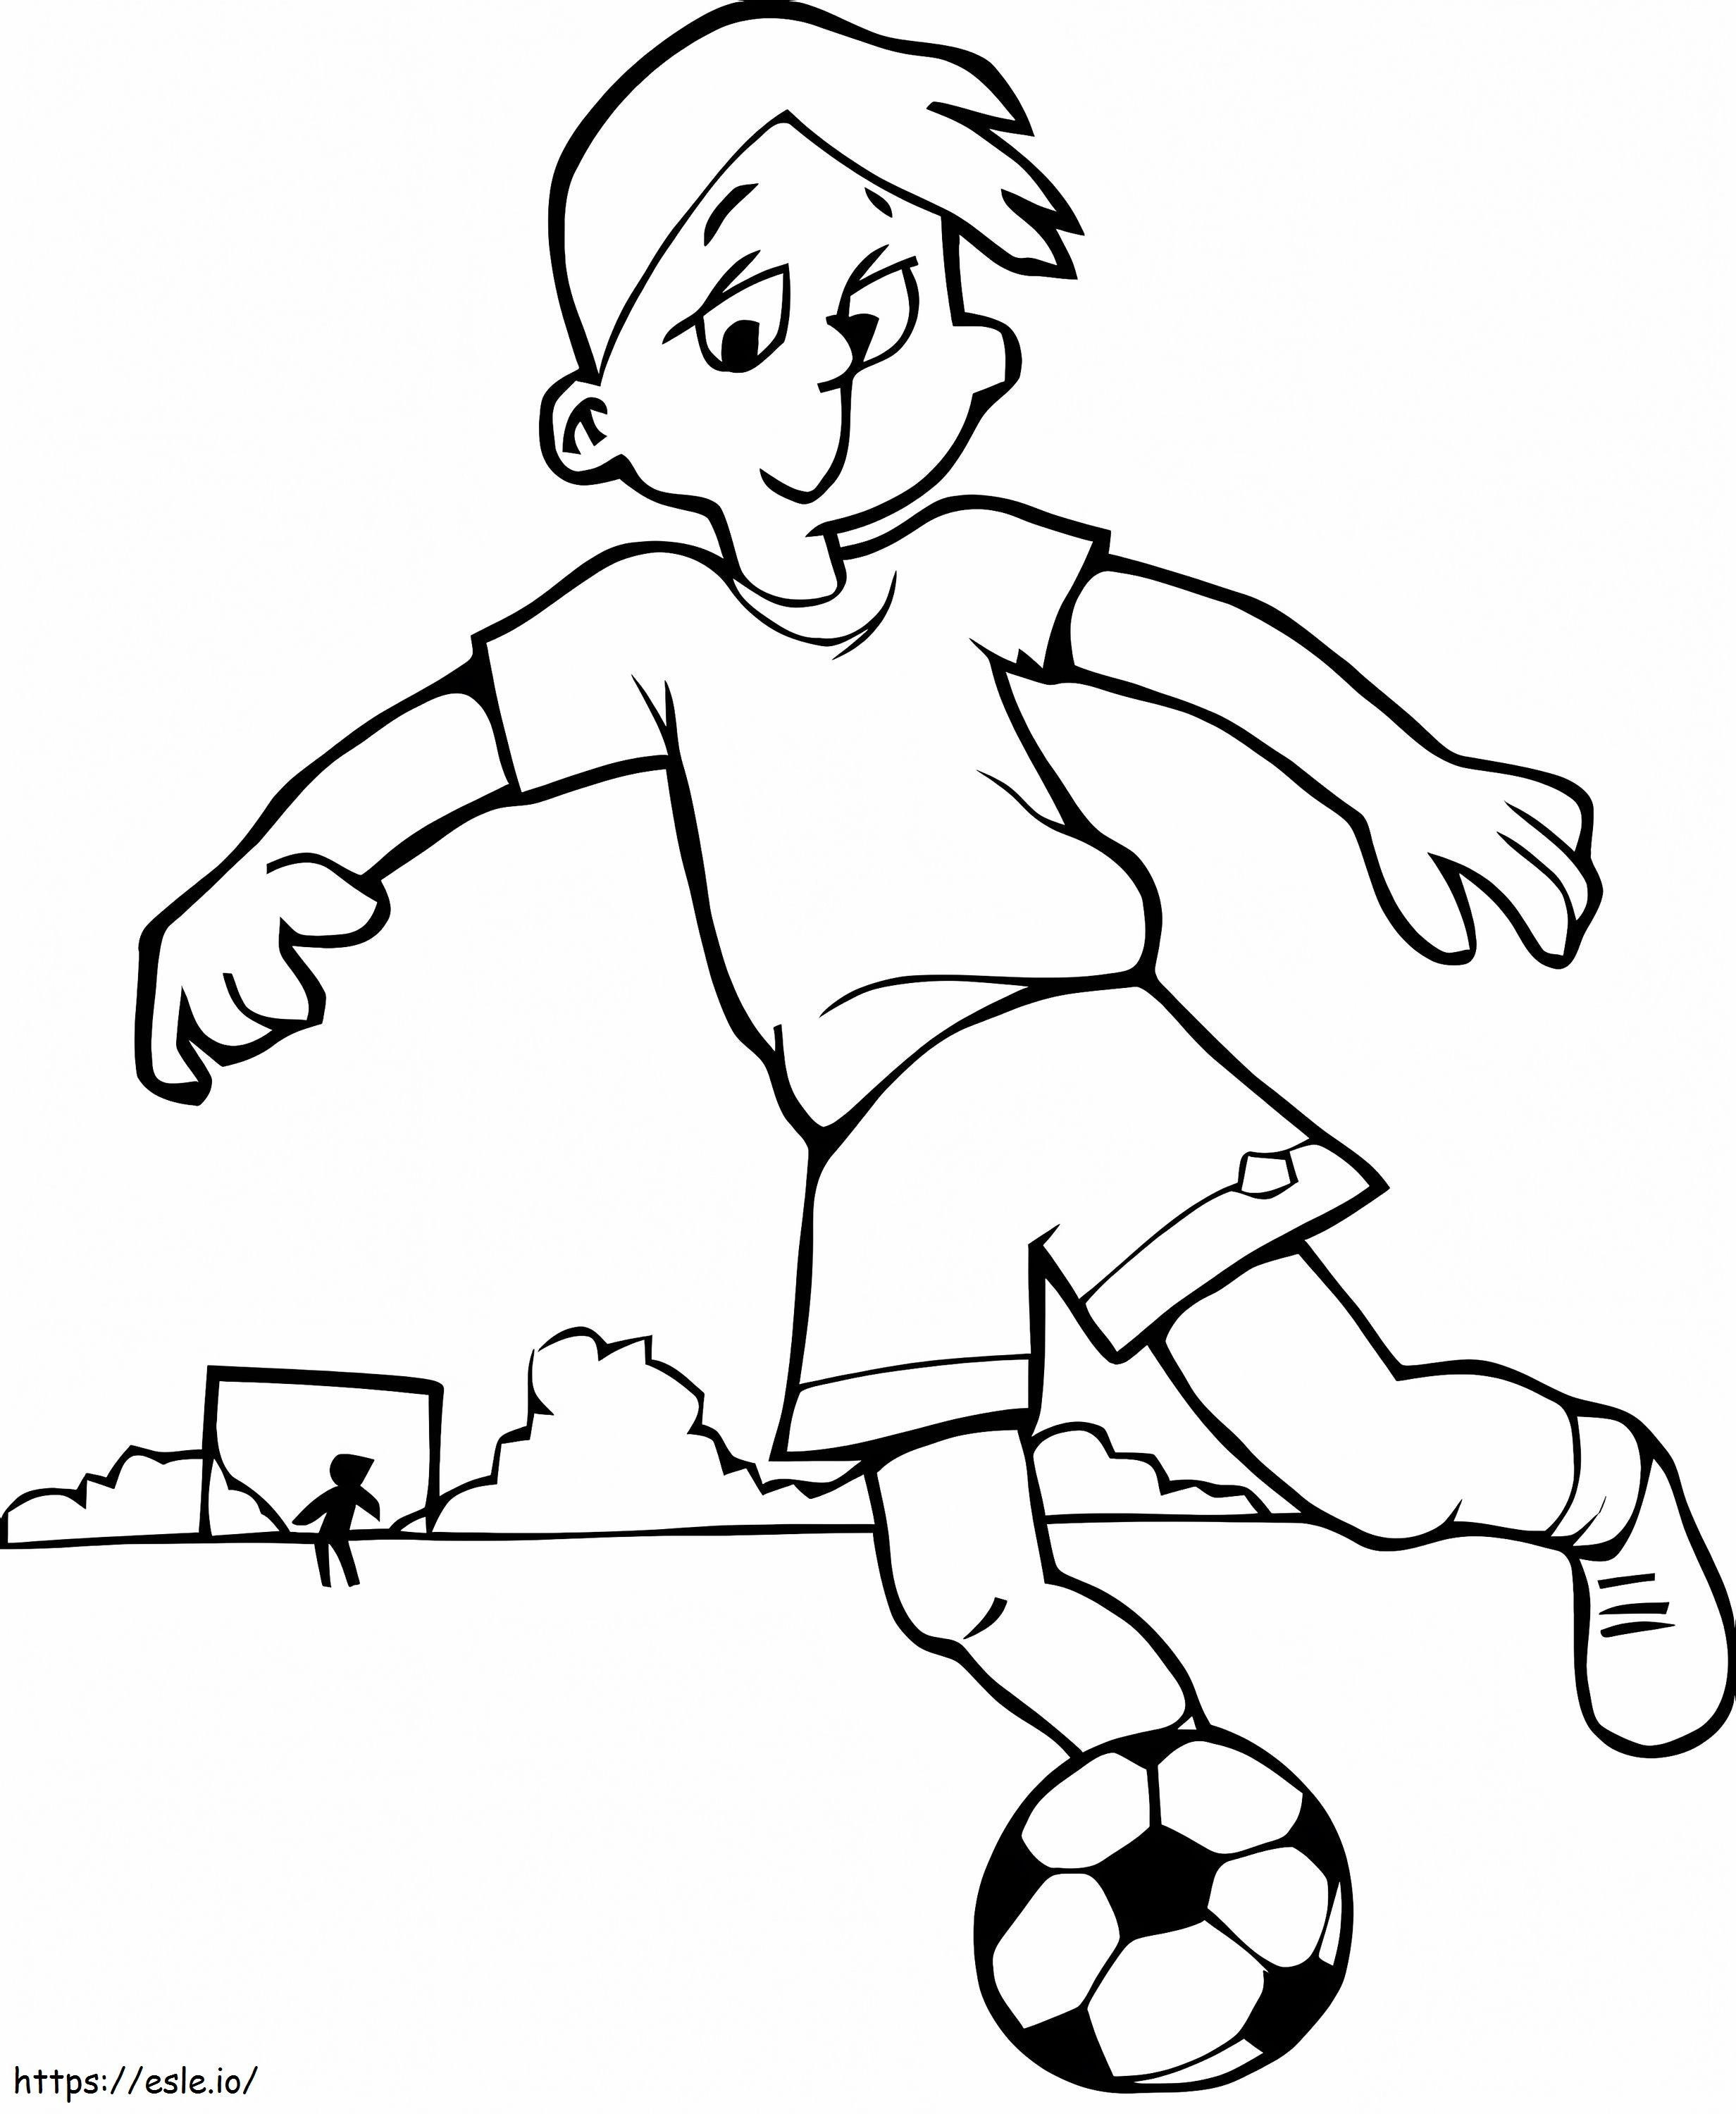 Malvorlagen Fußball für Kinder 9840 ausmalbilder